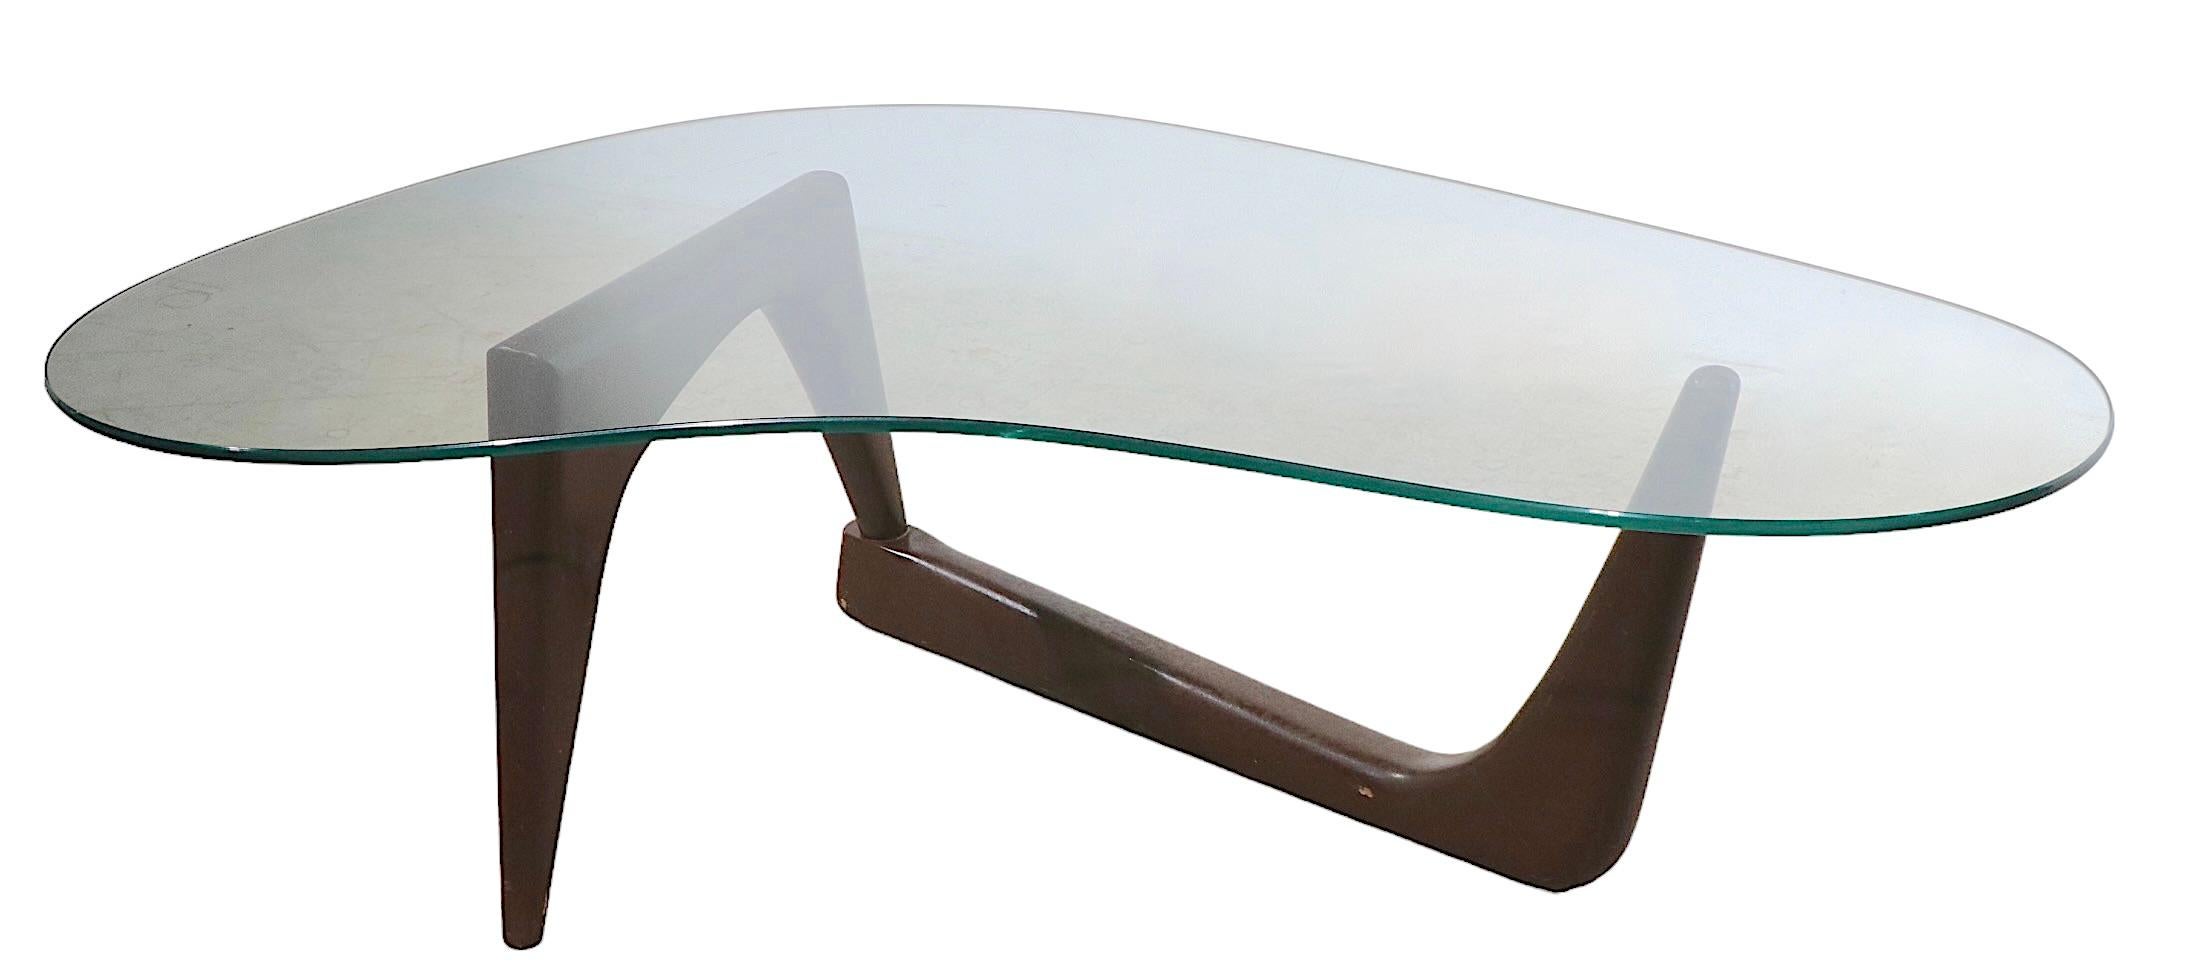 Table basse classique de forme libre du milieu du siècle avec base en bois sculpturale et plateau en verre de forme amibe. La base est construite en bois massif, et est flexible au niveau du joint de connexion, elle est en finition de peinture brune